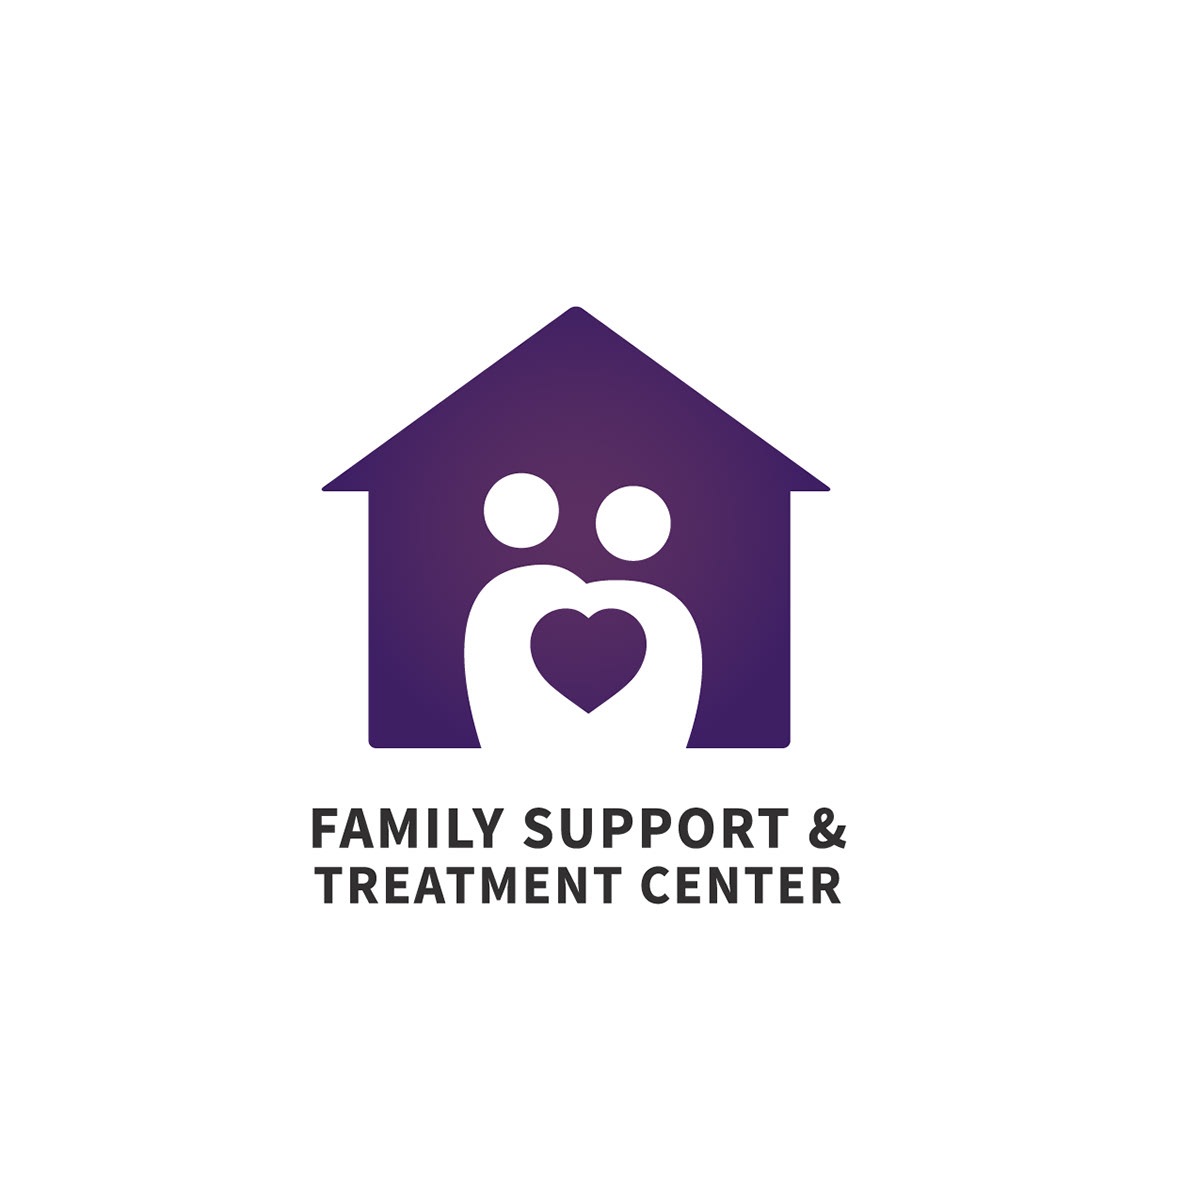 Social Work welfare logos family Logo Design